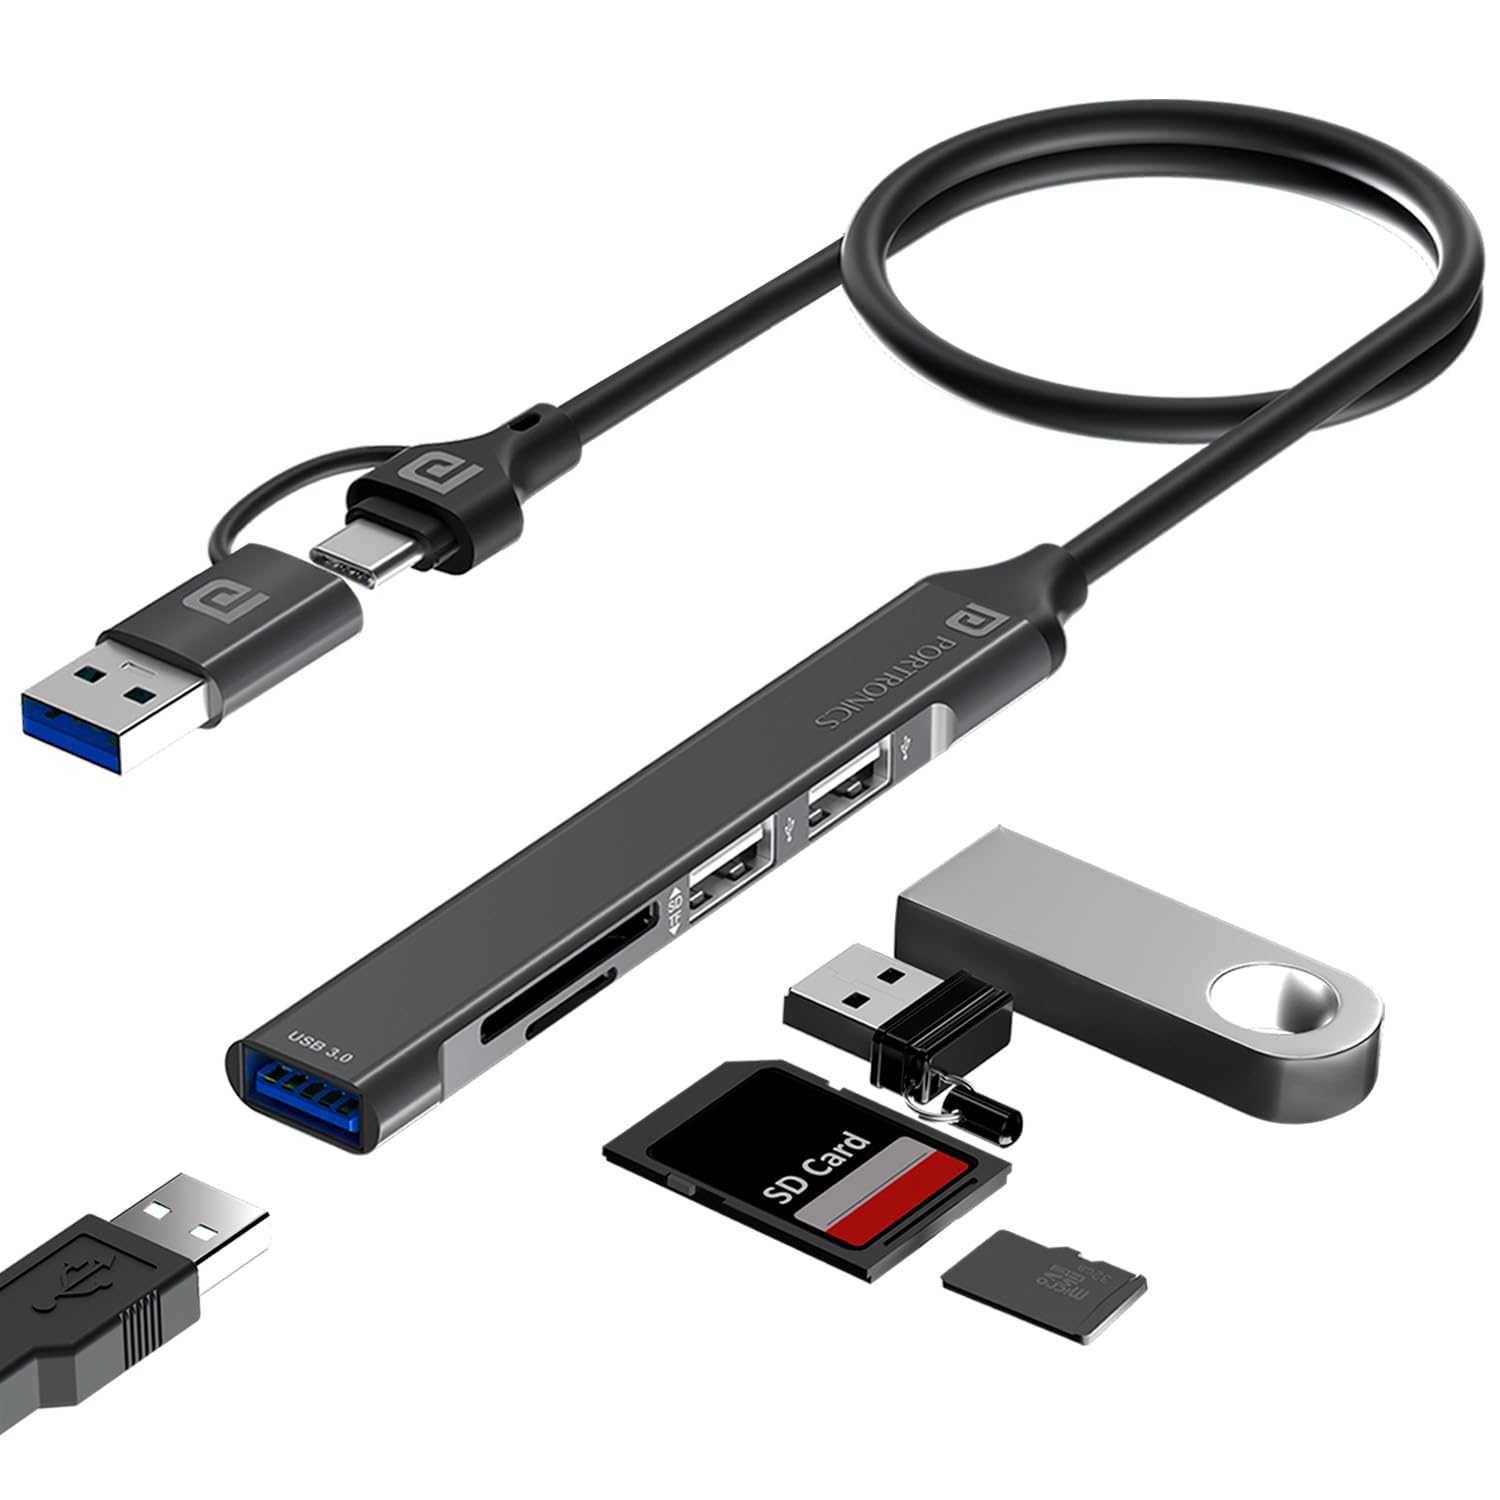 Portronics Mport 31 Plus USB 3.0 Hub (5-in-1)